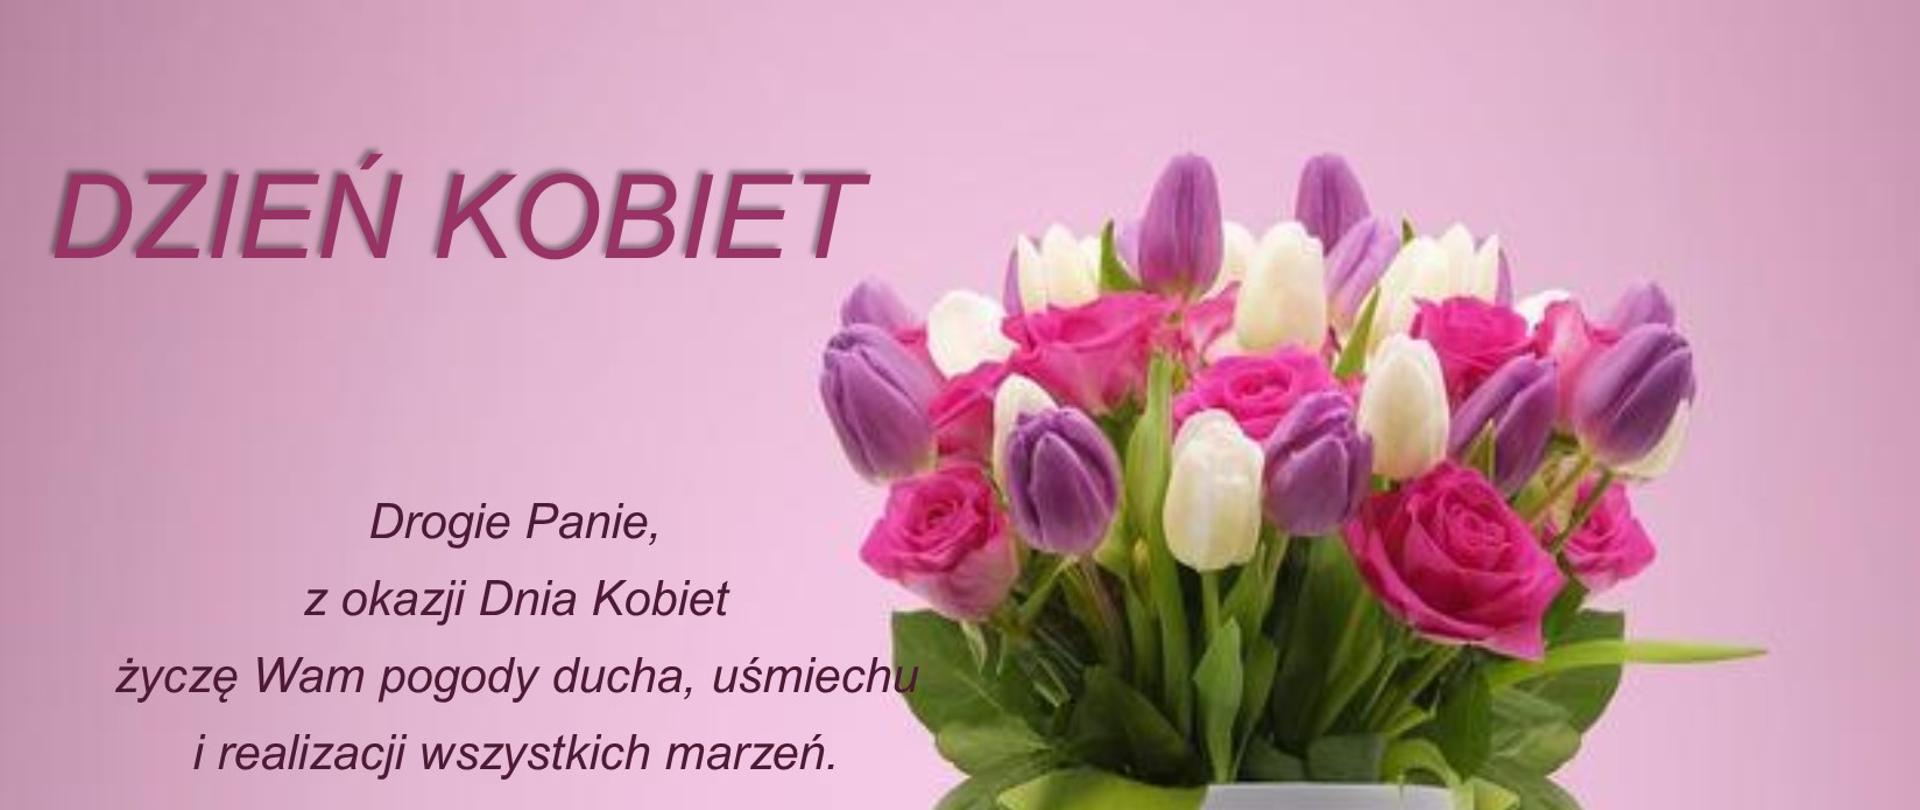 Bukiet kwiatów w białym flakonie na fioletowo- różowym tle obok życzenia